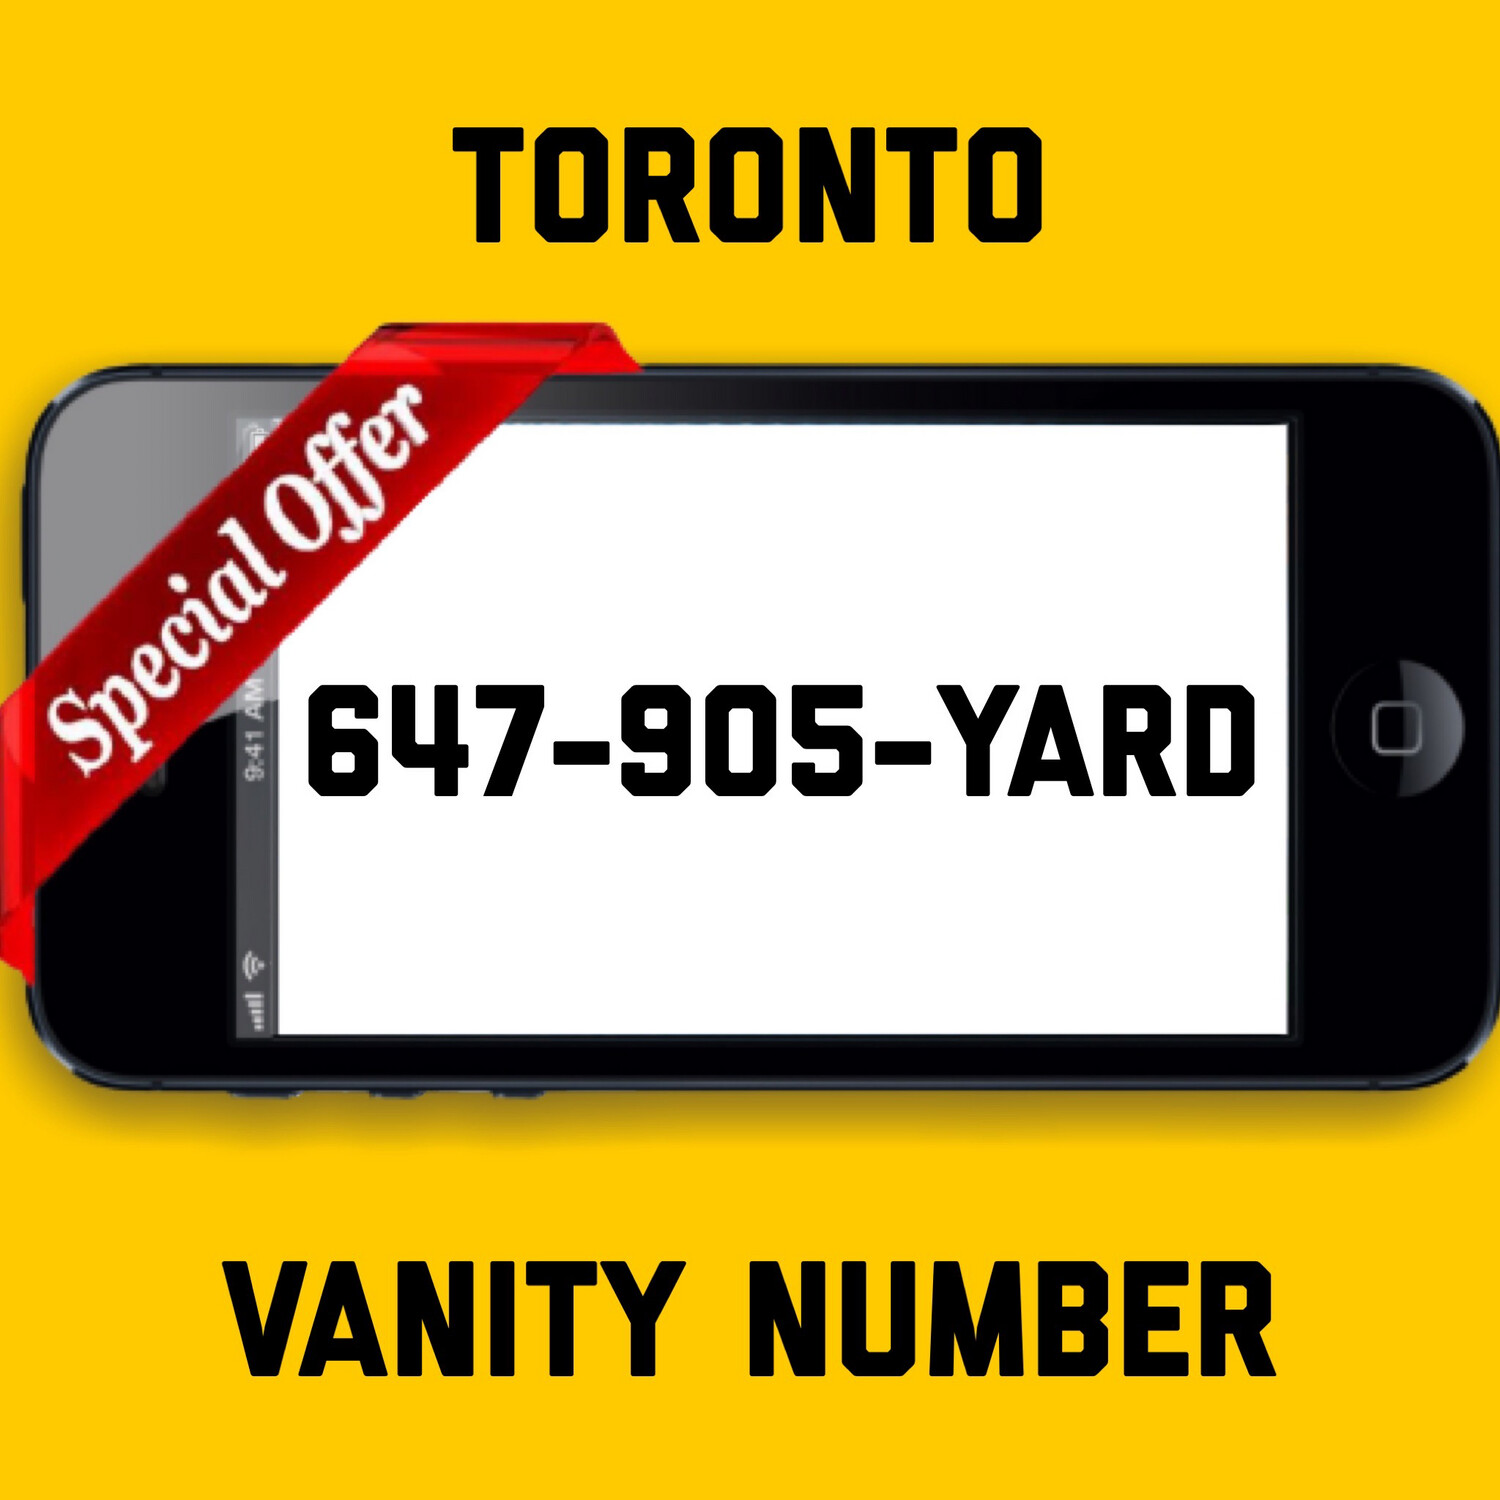 647-905-YARD VANITY NUMBER TORONTO